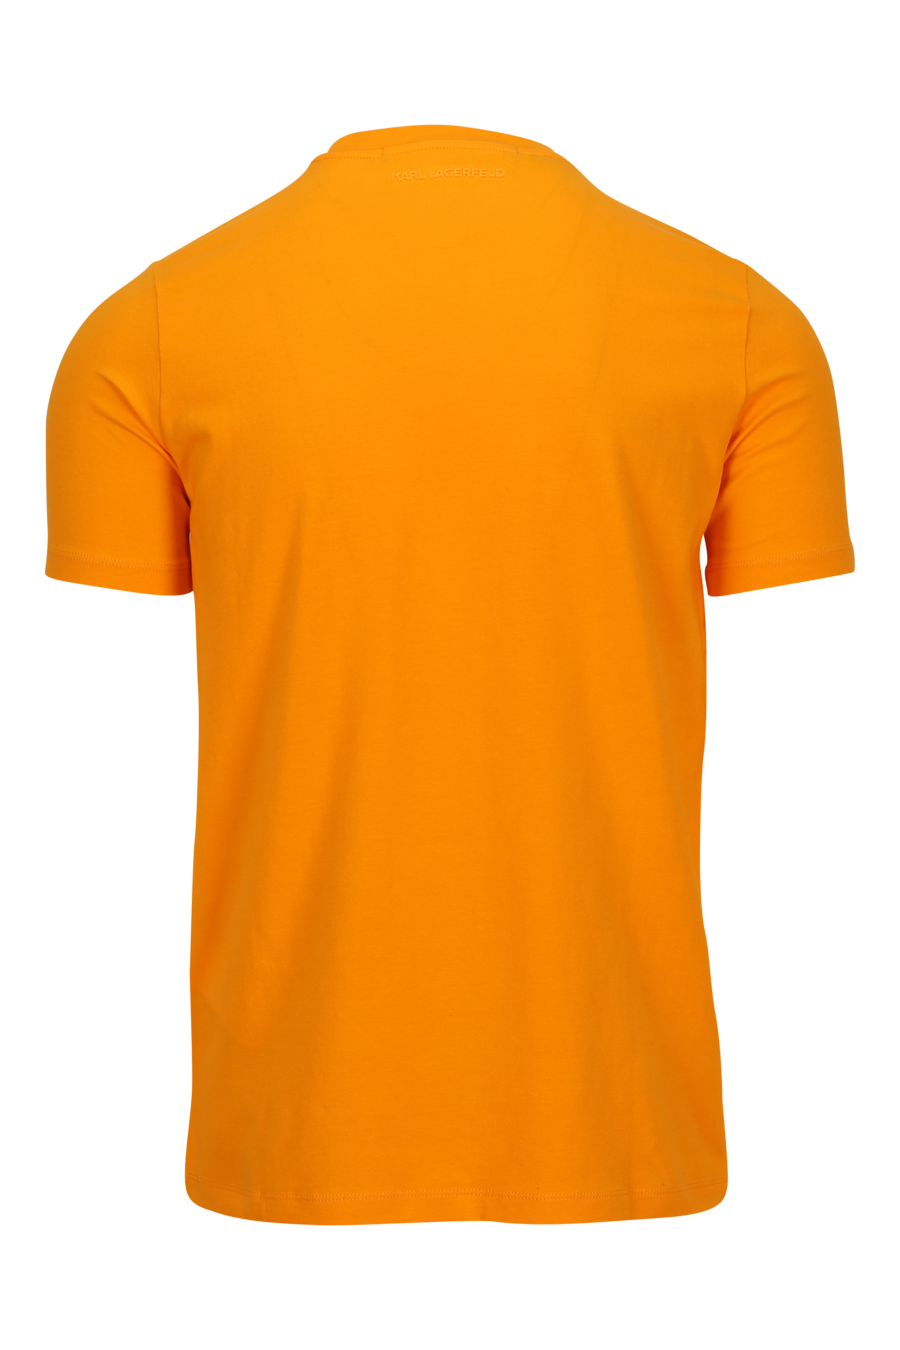 Camiseta naranja con minilogo "karl" en goma - 4062226954518 1